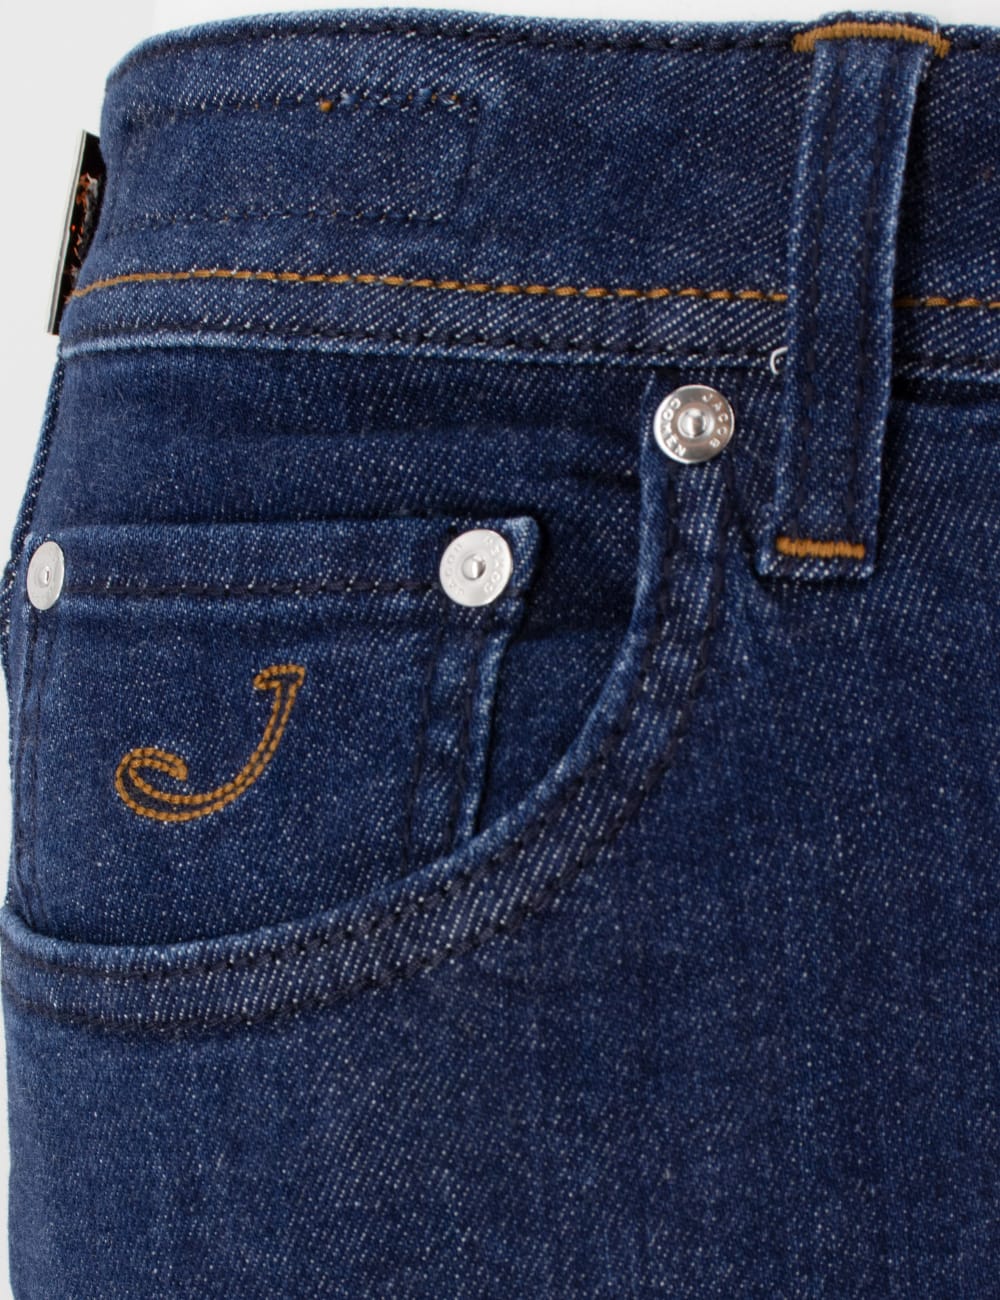 Shop Jacob Cohen Jeans In 484d